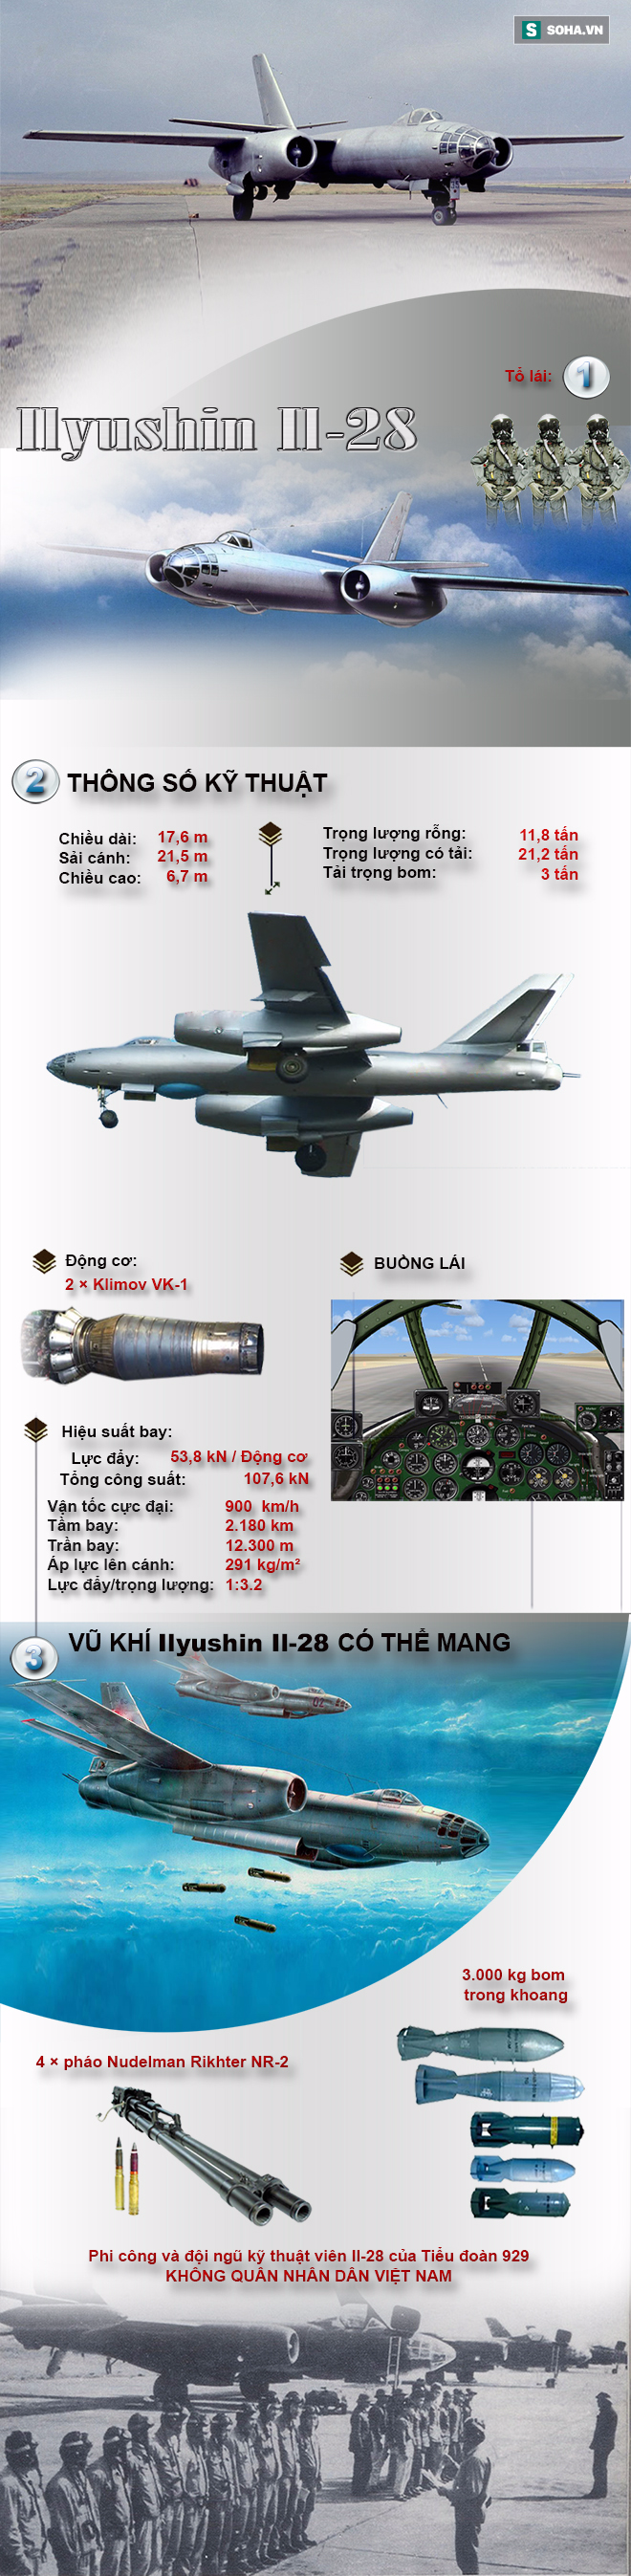 Máy bay ném bom duy nhất từng phục vụ trong biên chế Không quân Việt Nam - Ảnh 1.